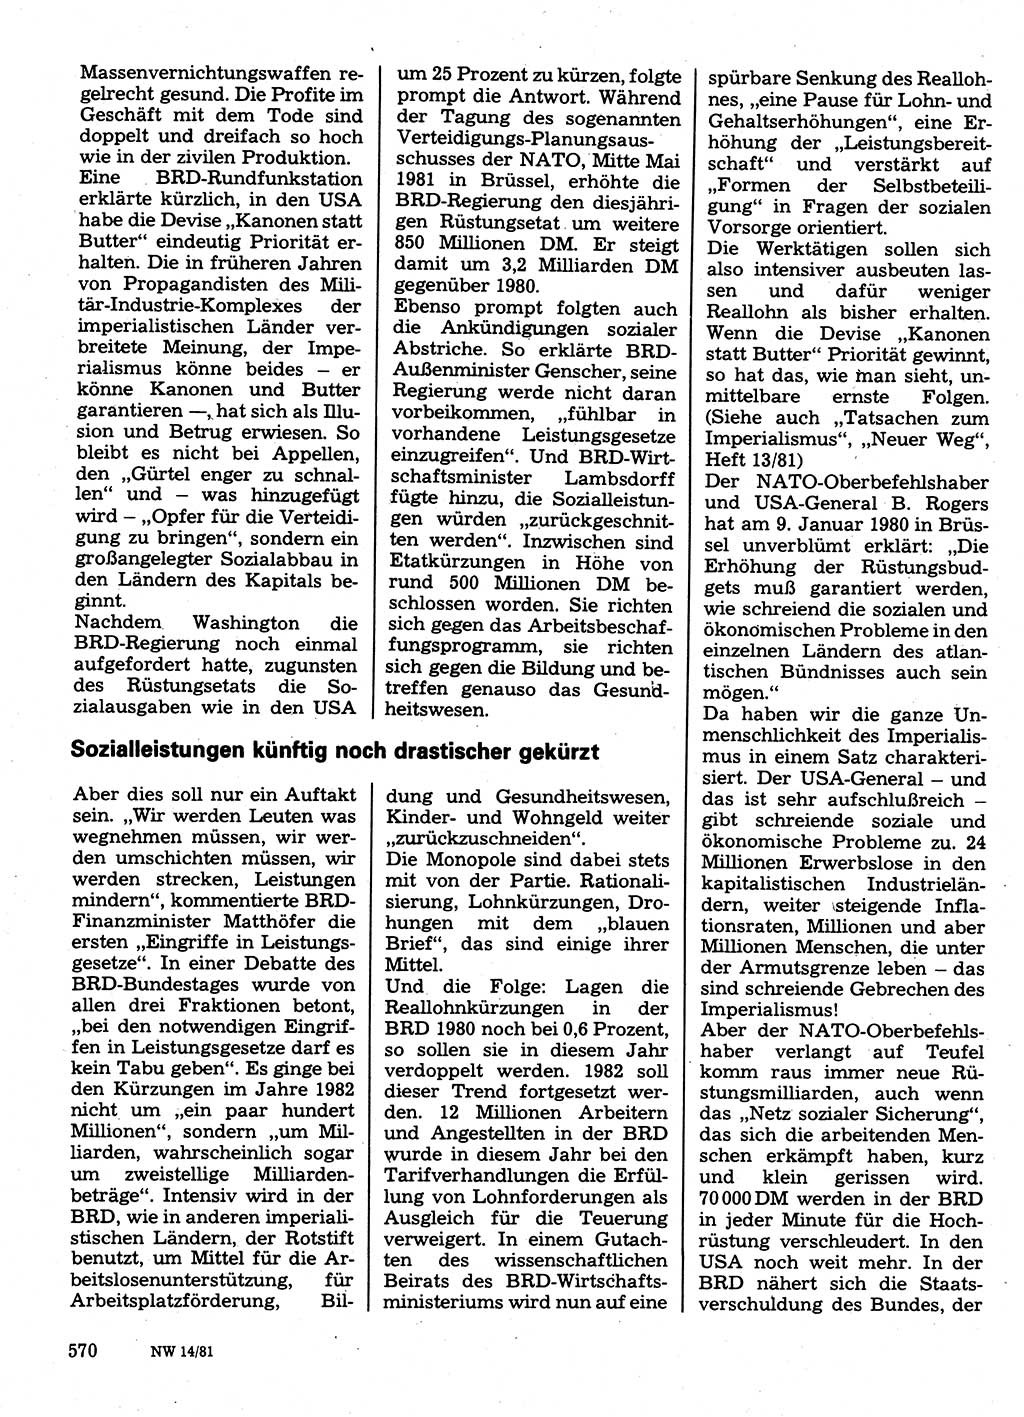 Neuer Weg (NW), Organ des Zentralkomitees (ZK) der SED (Sozialistische Einheitspartei Deutschlands) für Fragen des Parteilebens, 36. Jahrgang [Deutsche Demokratische Republik (DDR)] 1981, Seite 570 (NW ZK SED DDR 1981, S. 570)